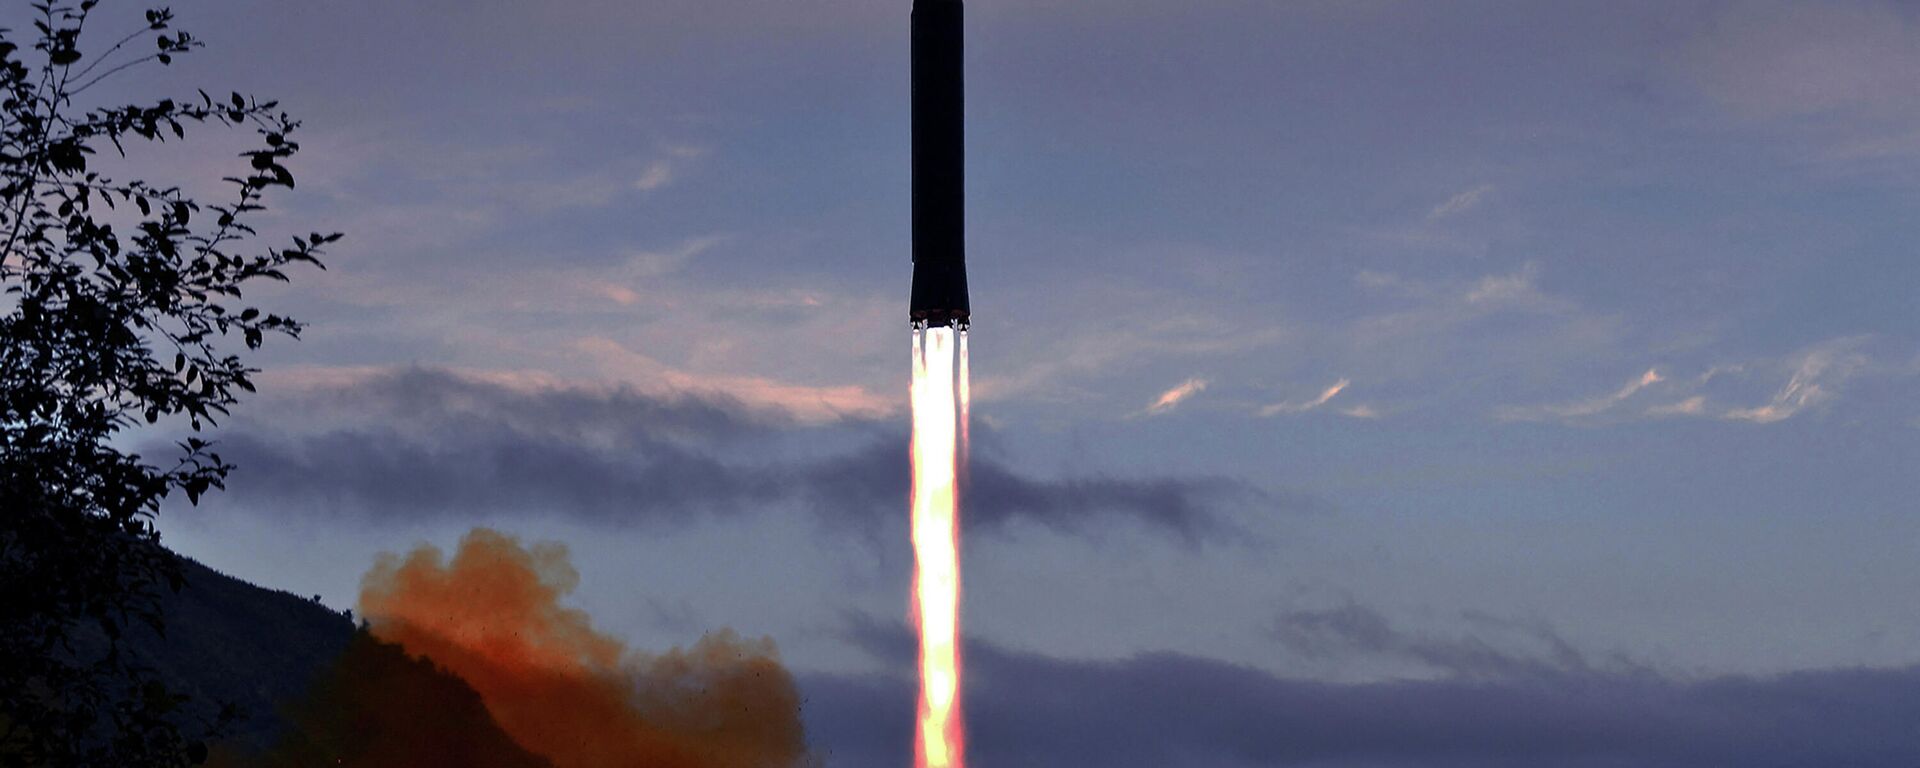 Foto de 28 de setembro de 2021, divulgada pela Agência Central de Notícias da Coreia (KCNA, na sigla em inglês), mostra o teste de um míssil hipersônico Hwasong-8 na província de Jagang, na Coreia do Norte - Sputnik Brasil, 1920, 11.01.2022